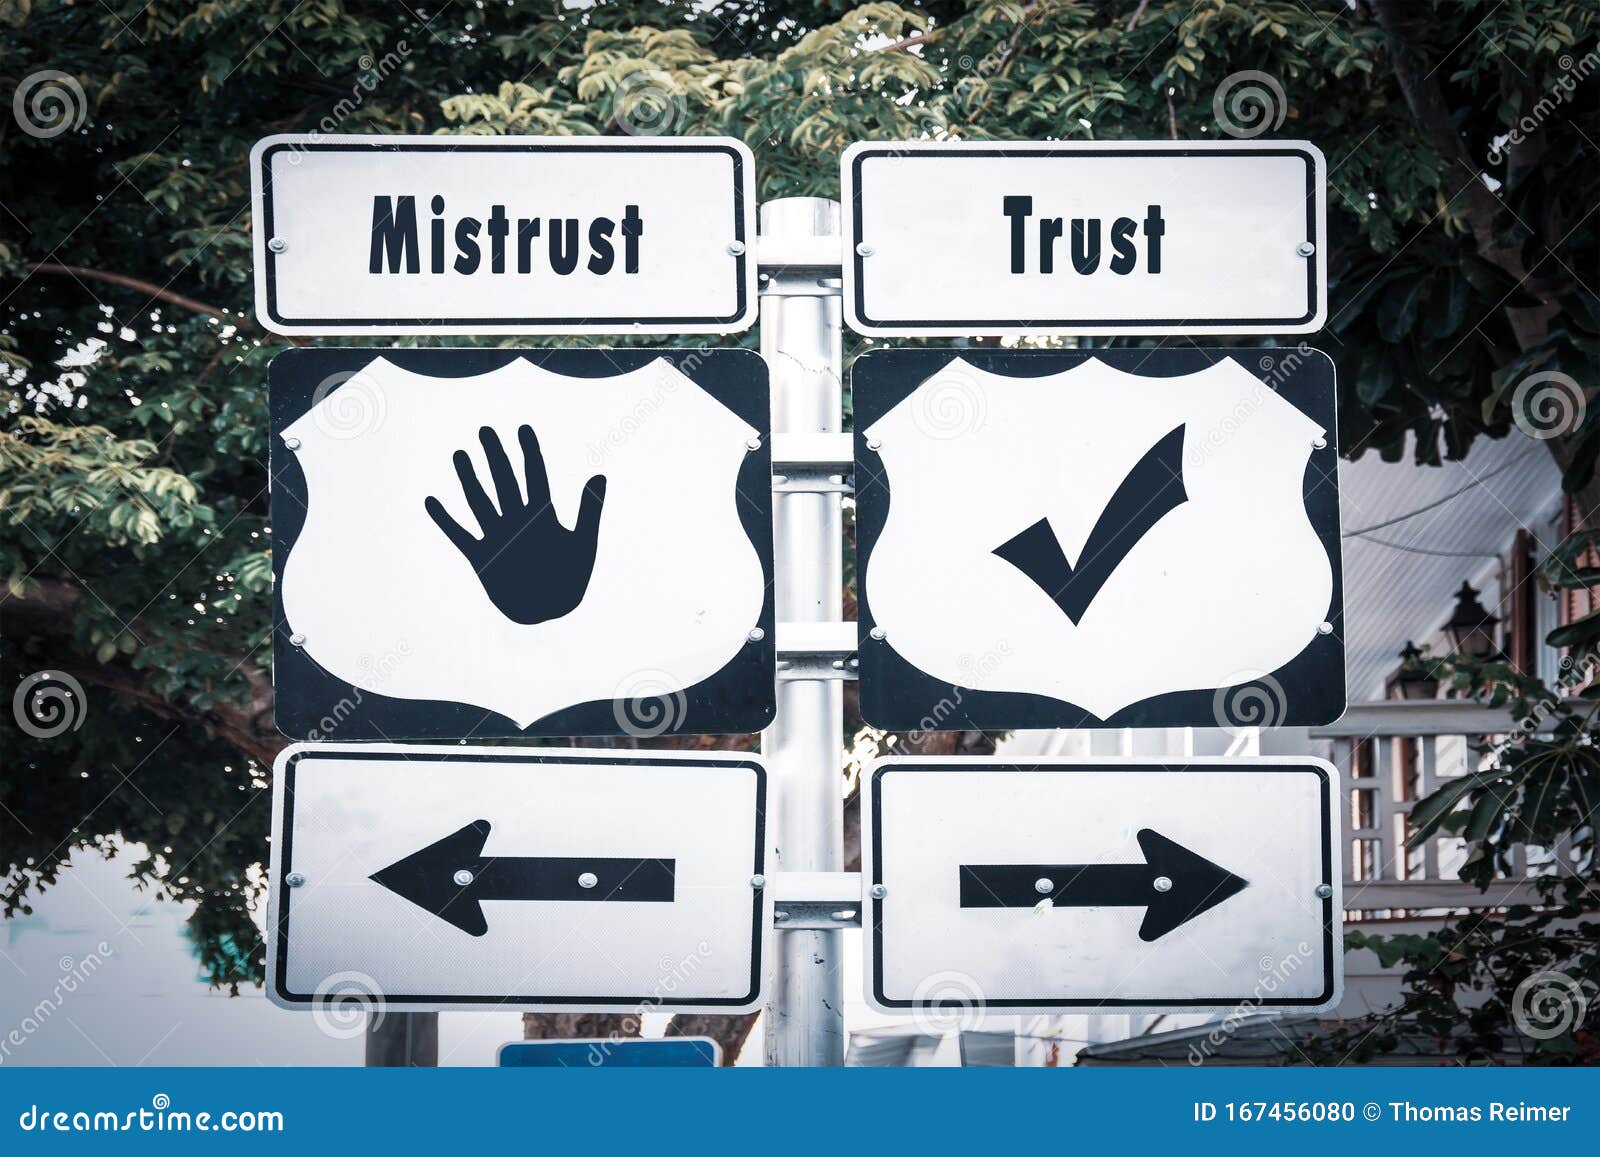 street sign to trust versus mistrust